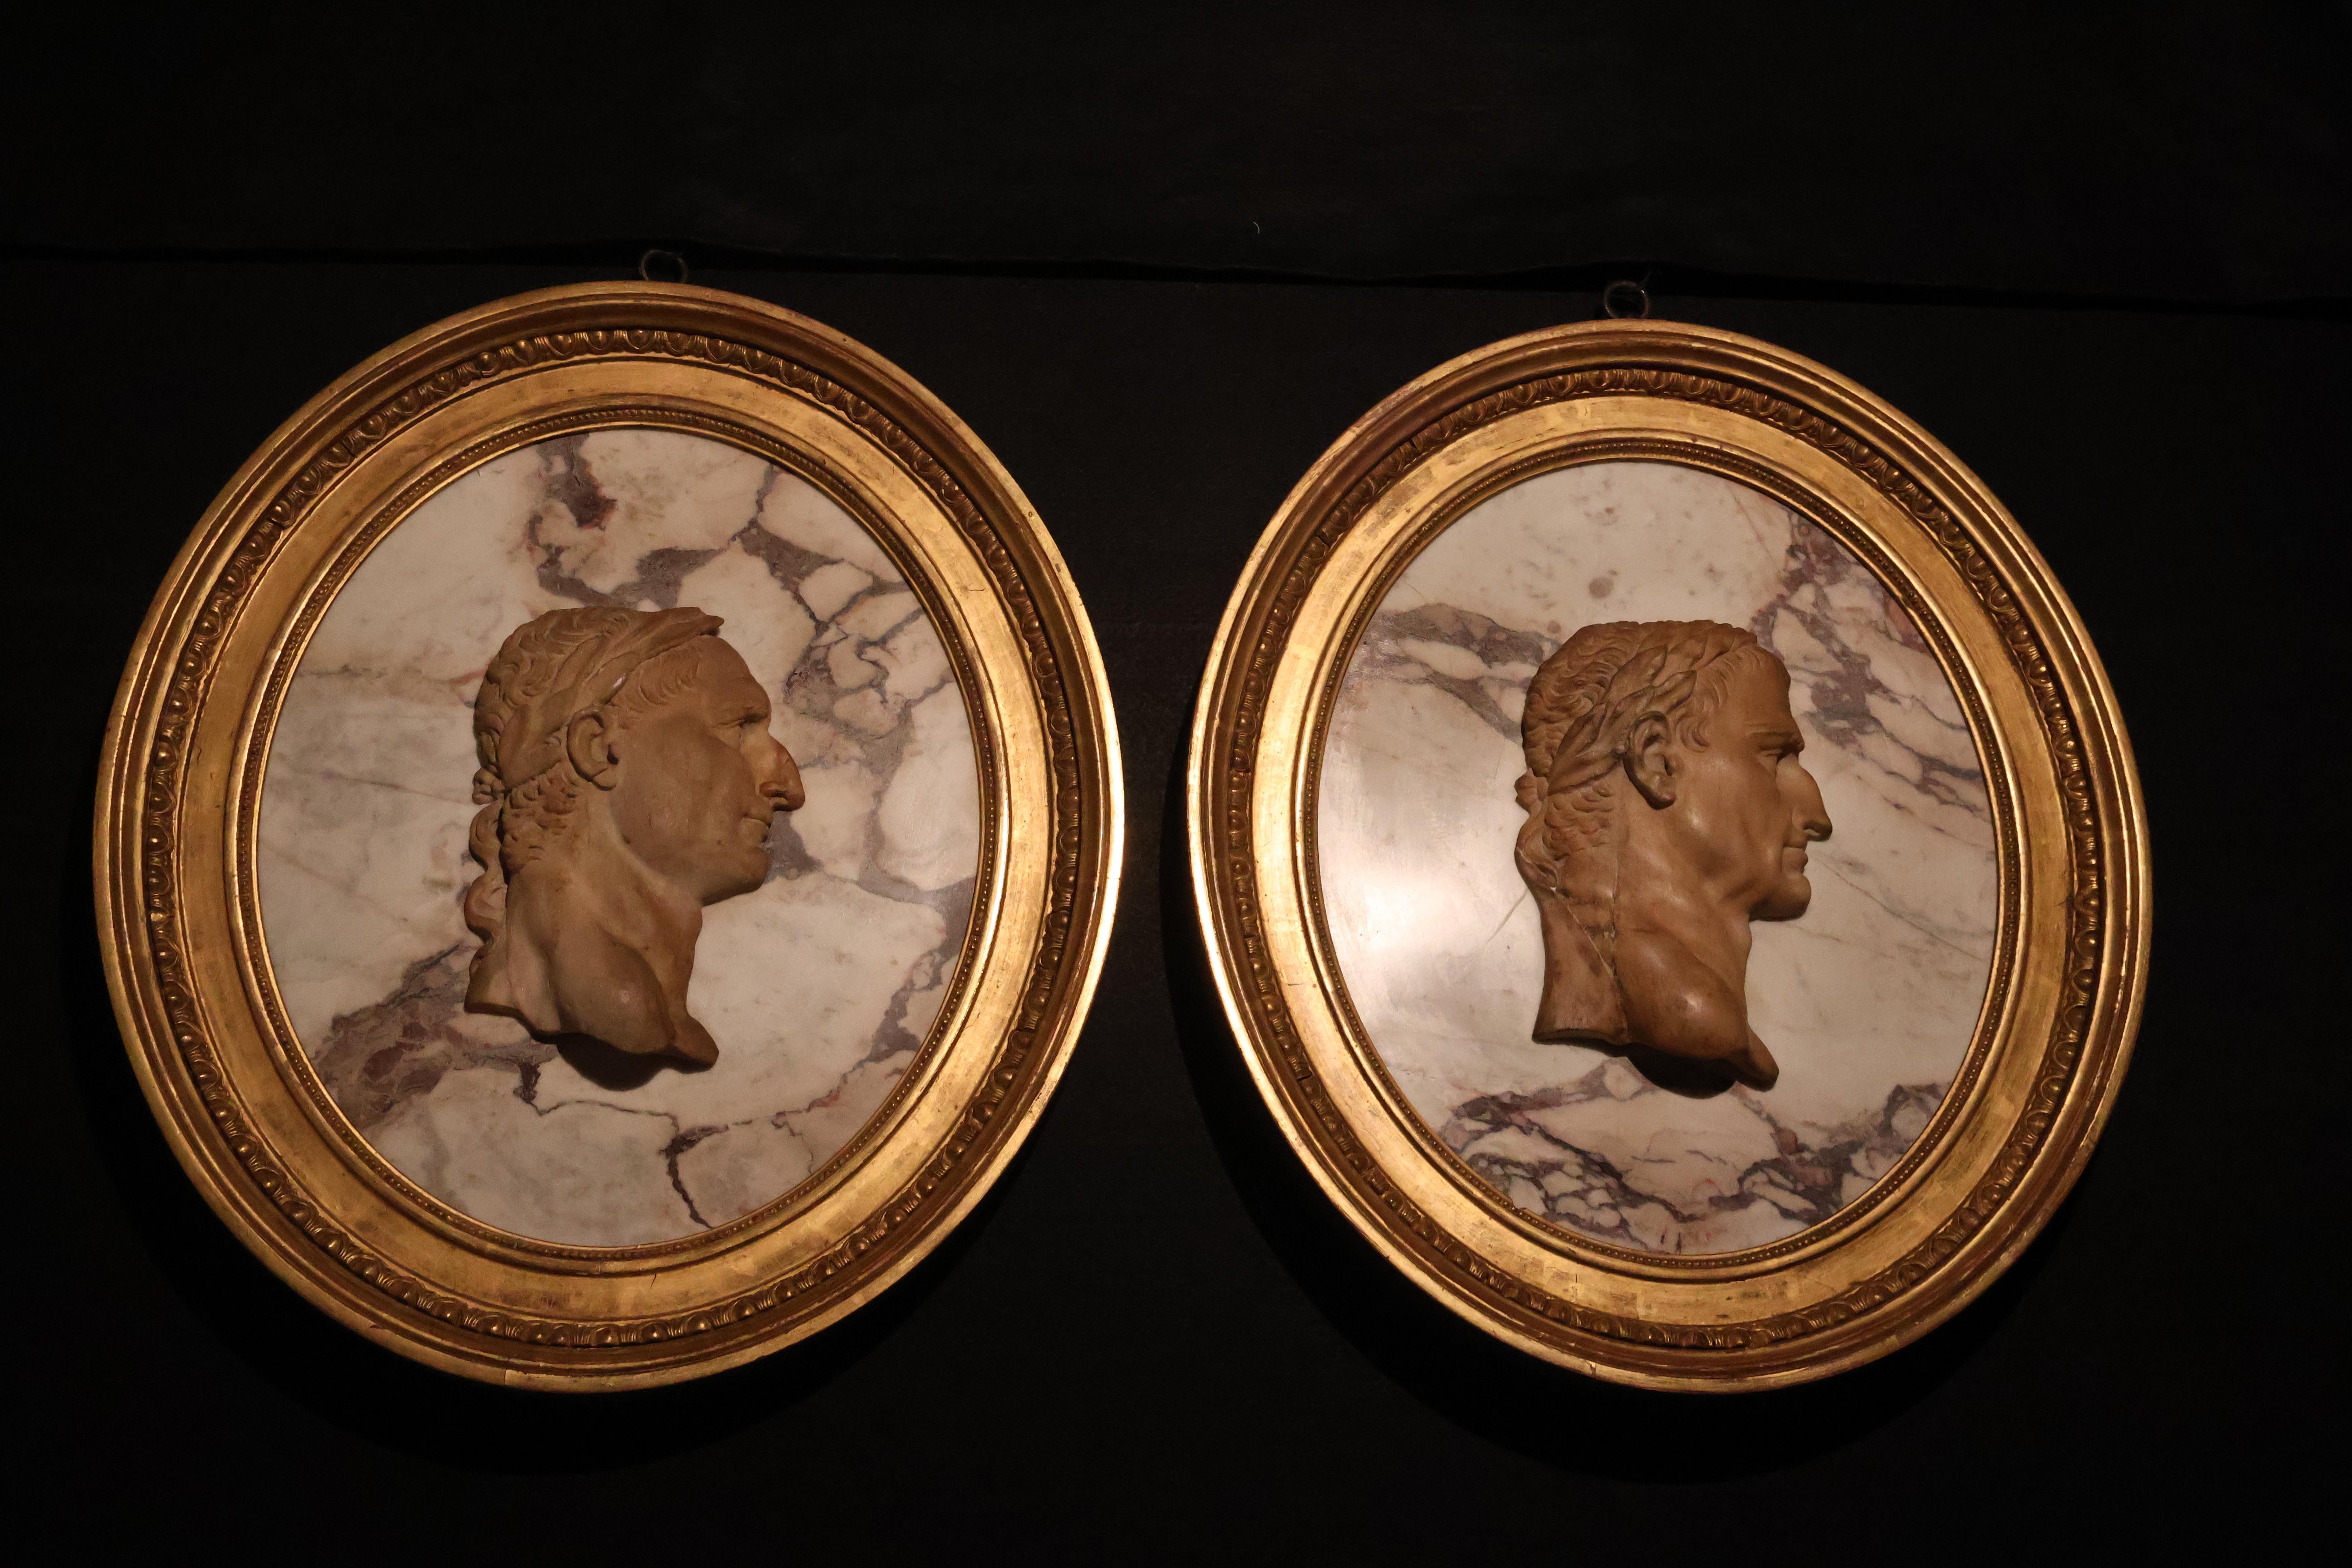 Superbe paire de camées en Violette et marbre représentant des empereurs romains dans un cadre ovale en bois doré. France, vers 1860.
CW5028